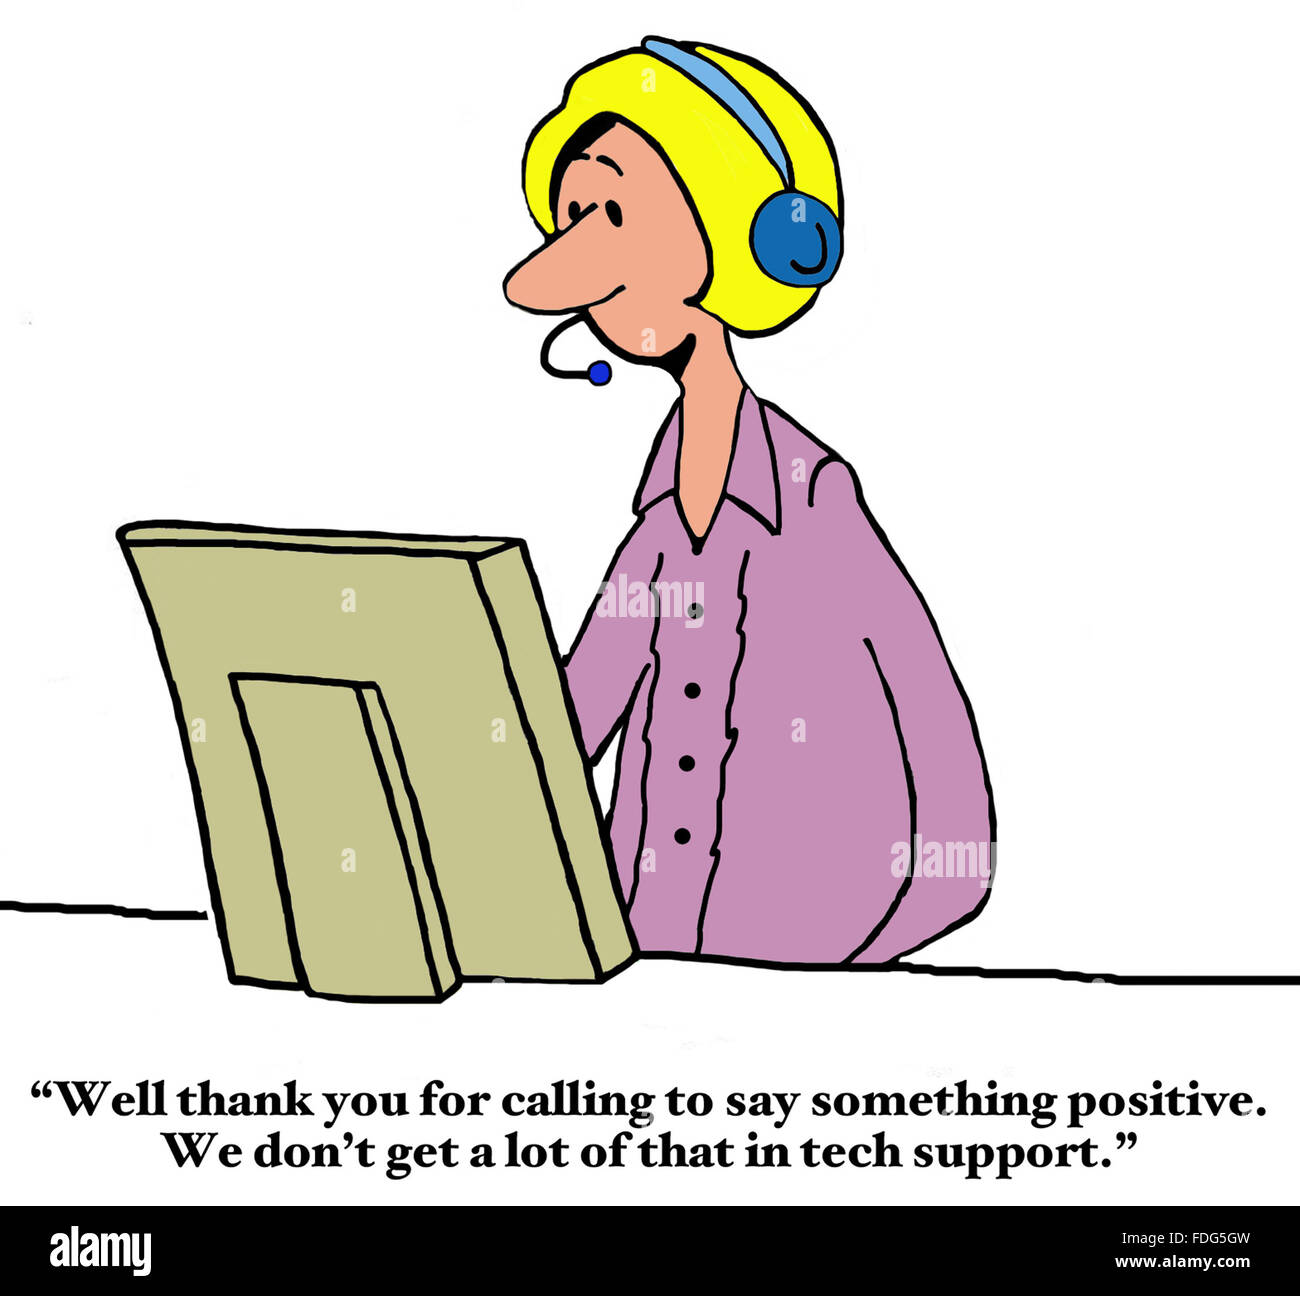 Kunden-Service-Cartoon.  Die Tech-Support-Frau ist überrascht, einen Telefonanruf dankte ihr für ihre Kunden-Service zu erhalten. Stockfoto